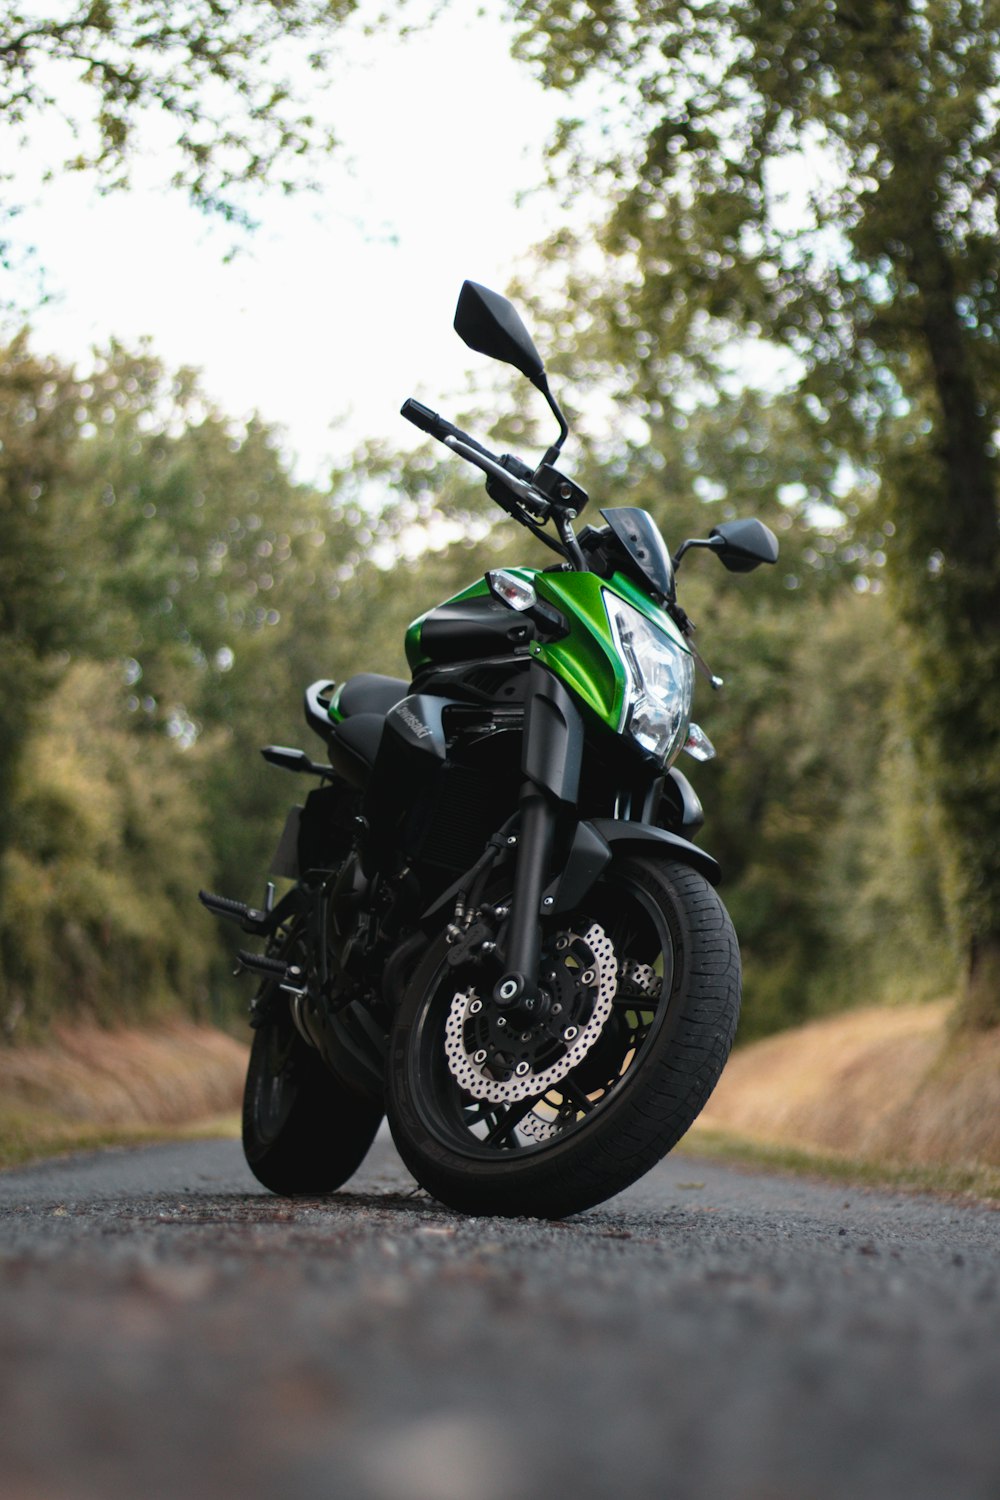 Motocicleta negra y verde en la carretera durante el día